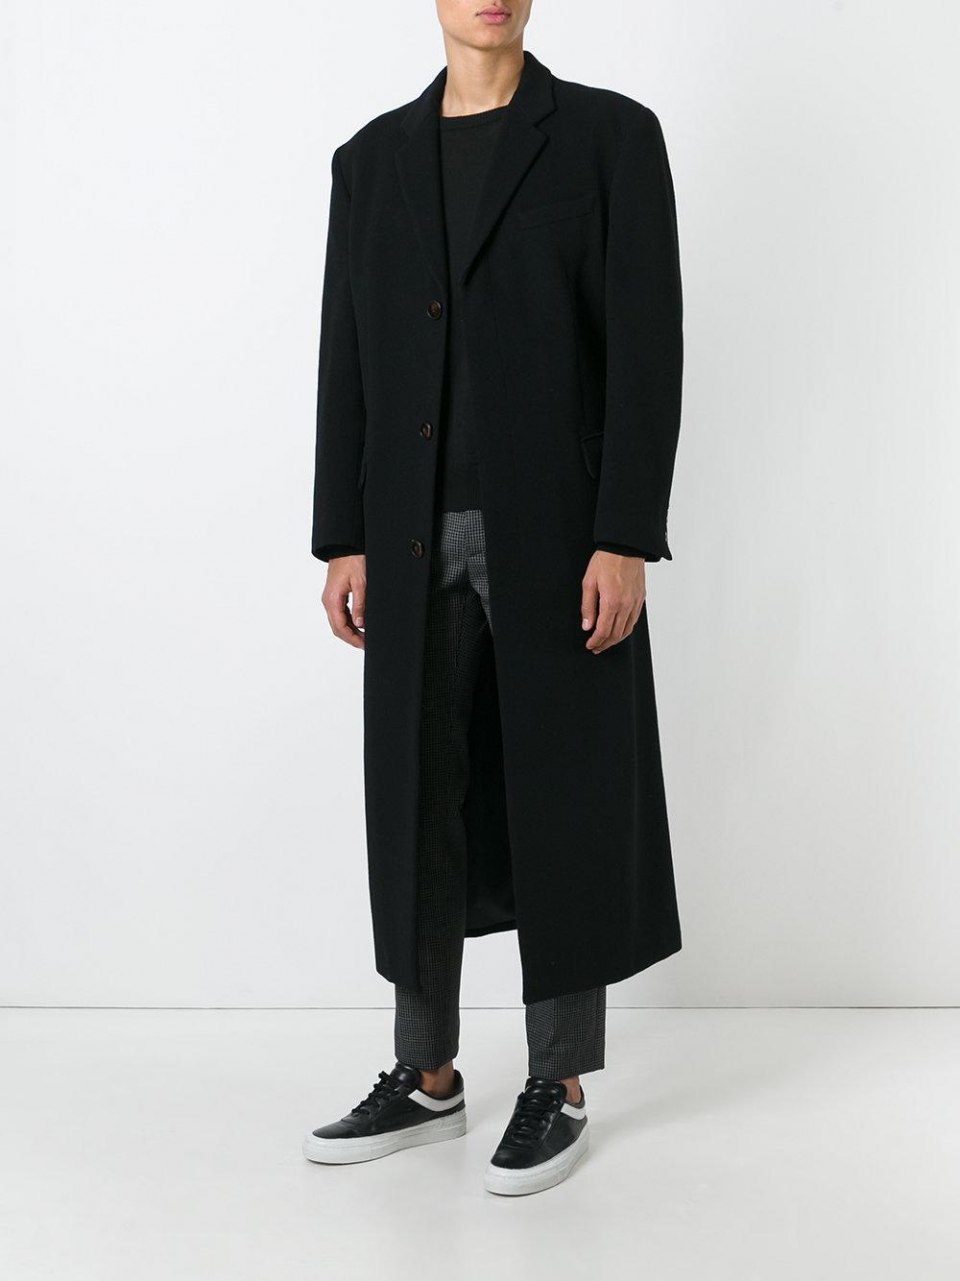 Низкое мужское пальто. Пальто мужское Formenti 2020. Пальто мужское черное длинное. Пальто до колен мужское. Пальто ниже колена мужское.